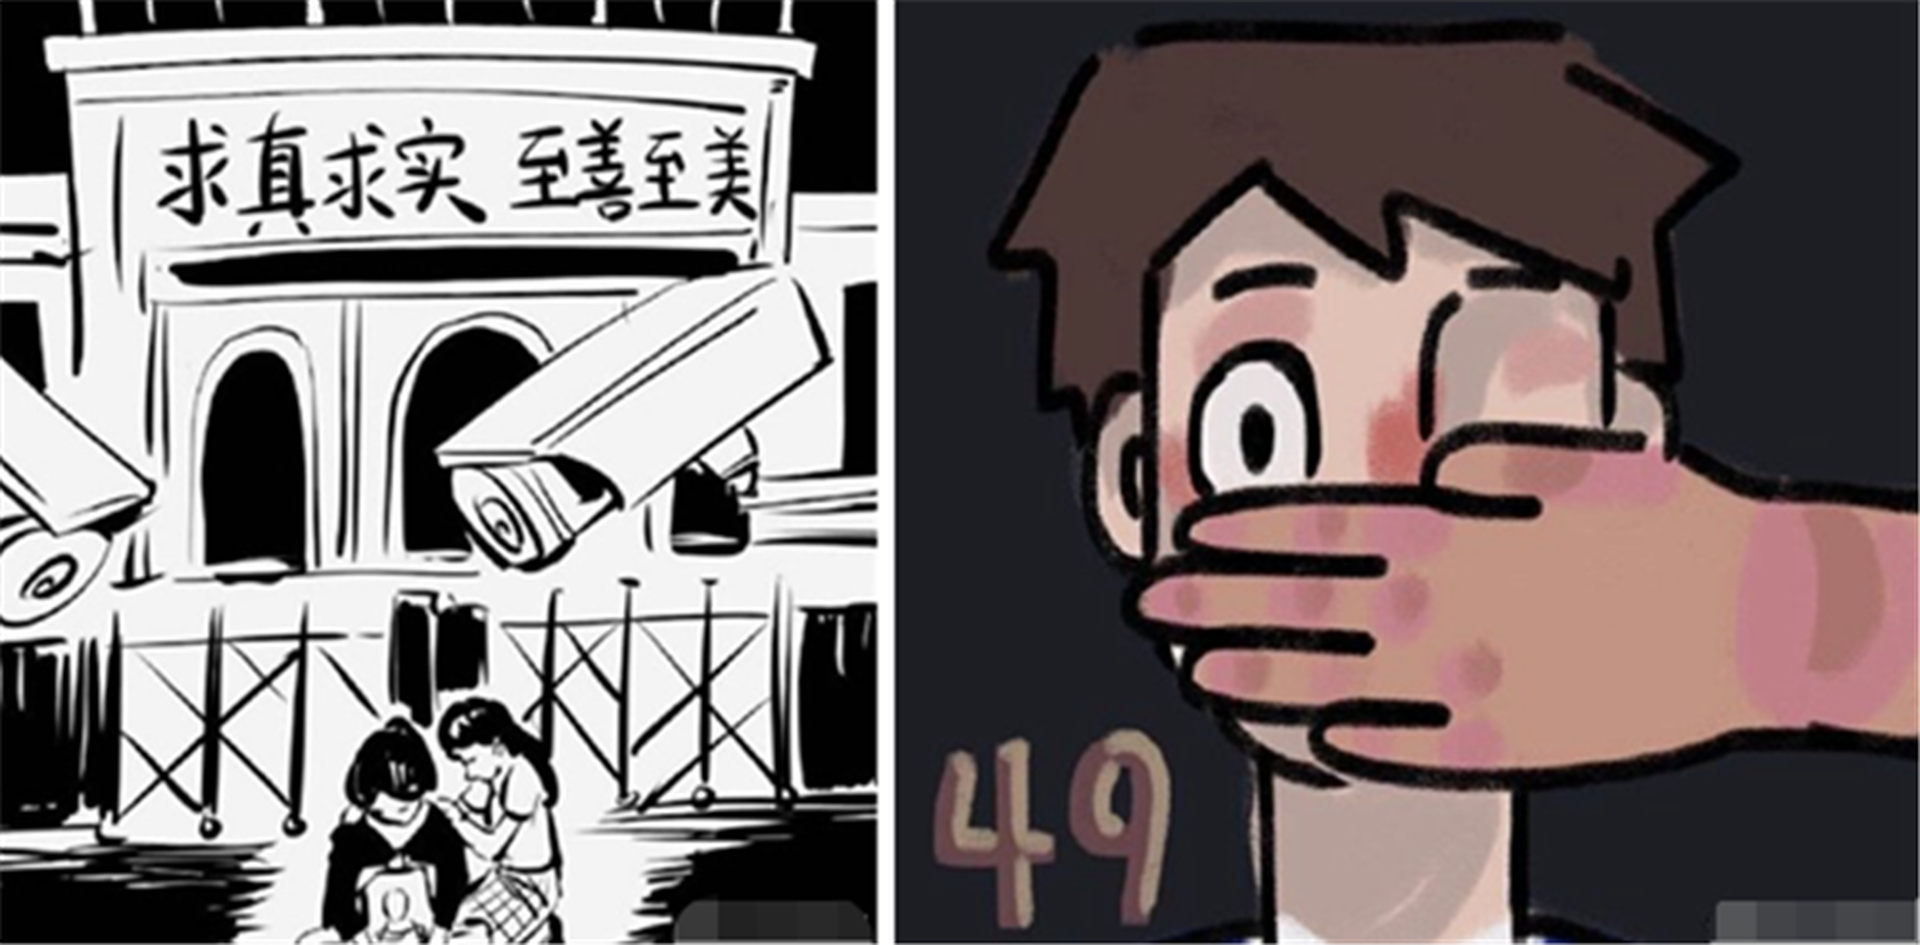 中国官方曝成都49中坠亡现场画面乌合麒麟批造谣漫画带节奏 图 多维新闻 中国